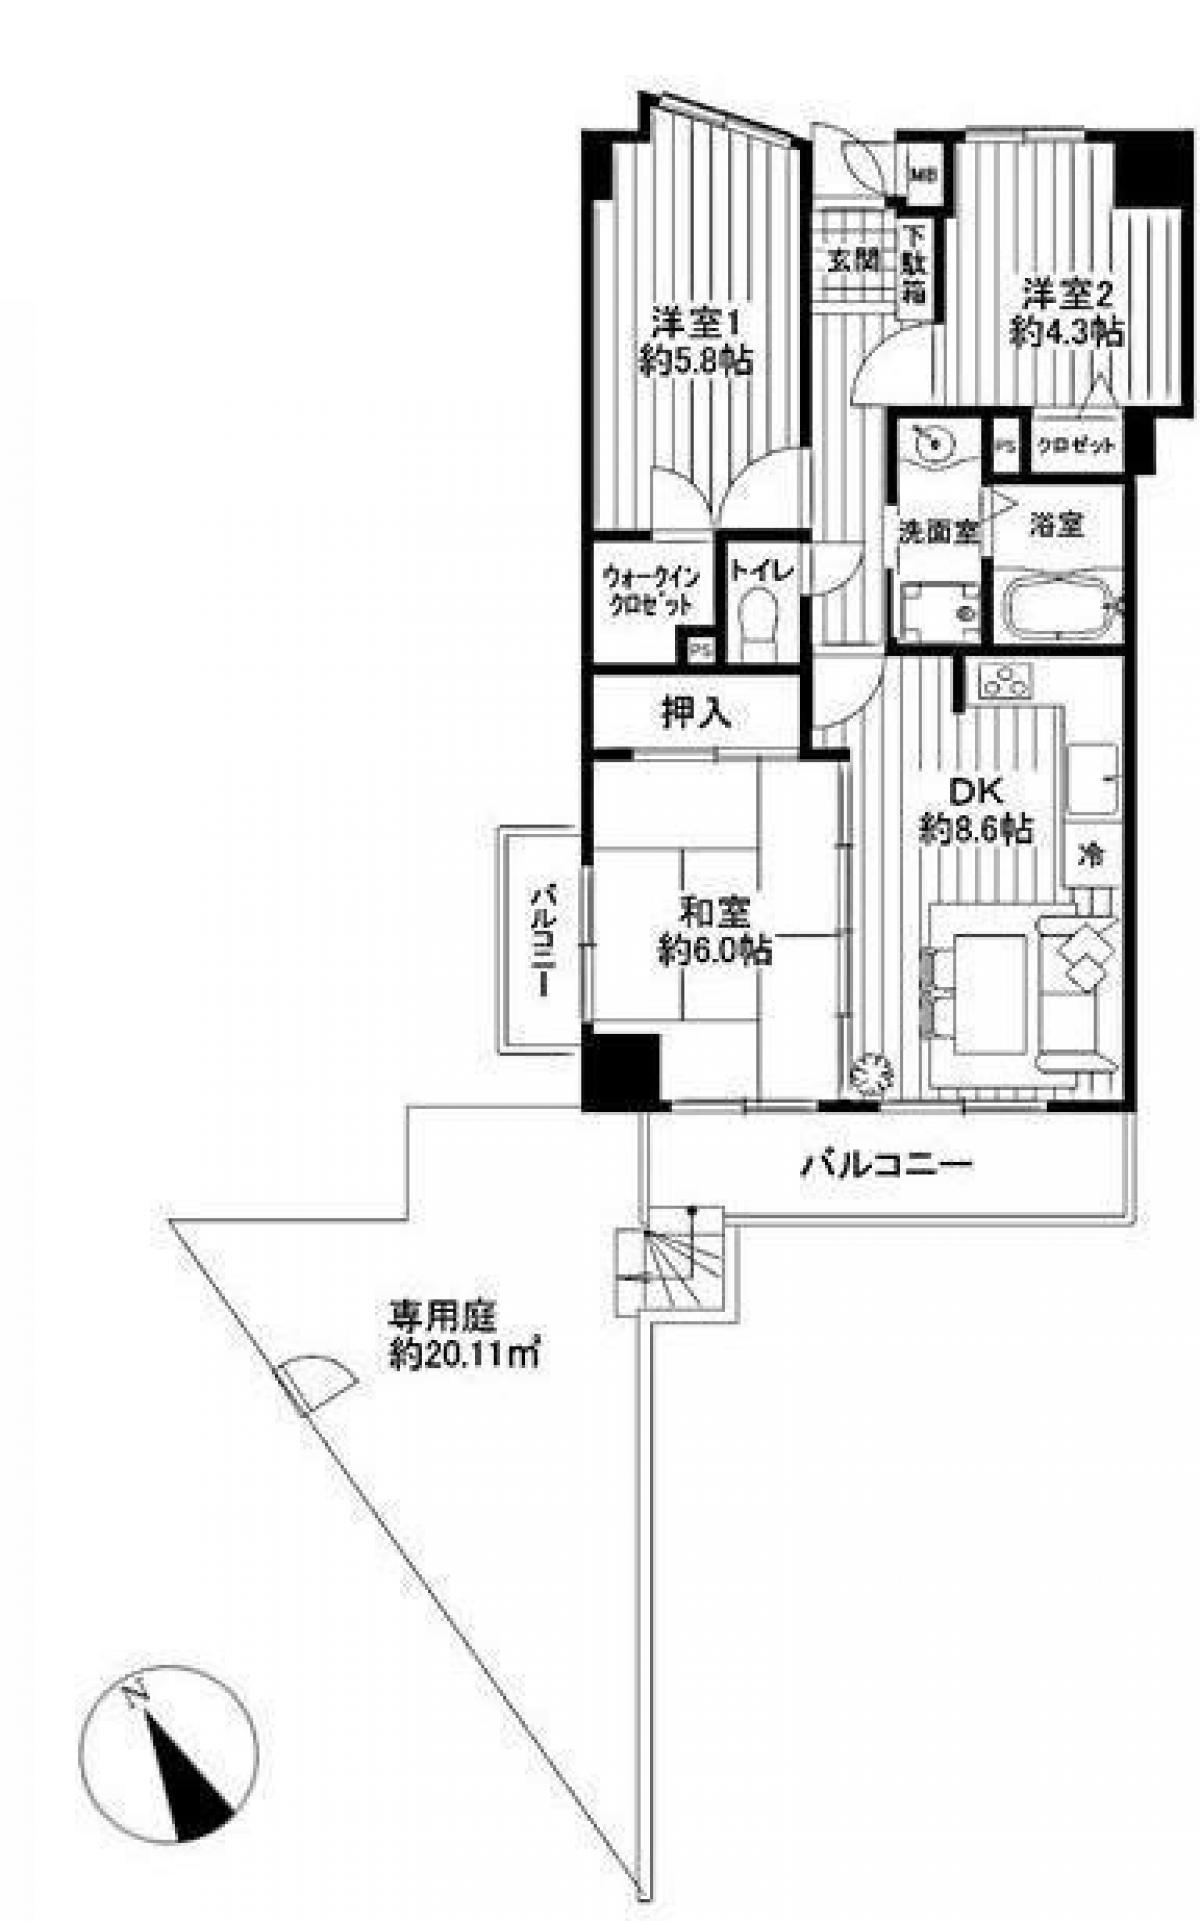 Picture of Apartment For Sale in Saitama Shi Nishi Ku, Saitama, Japan